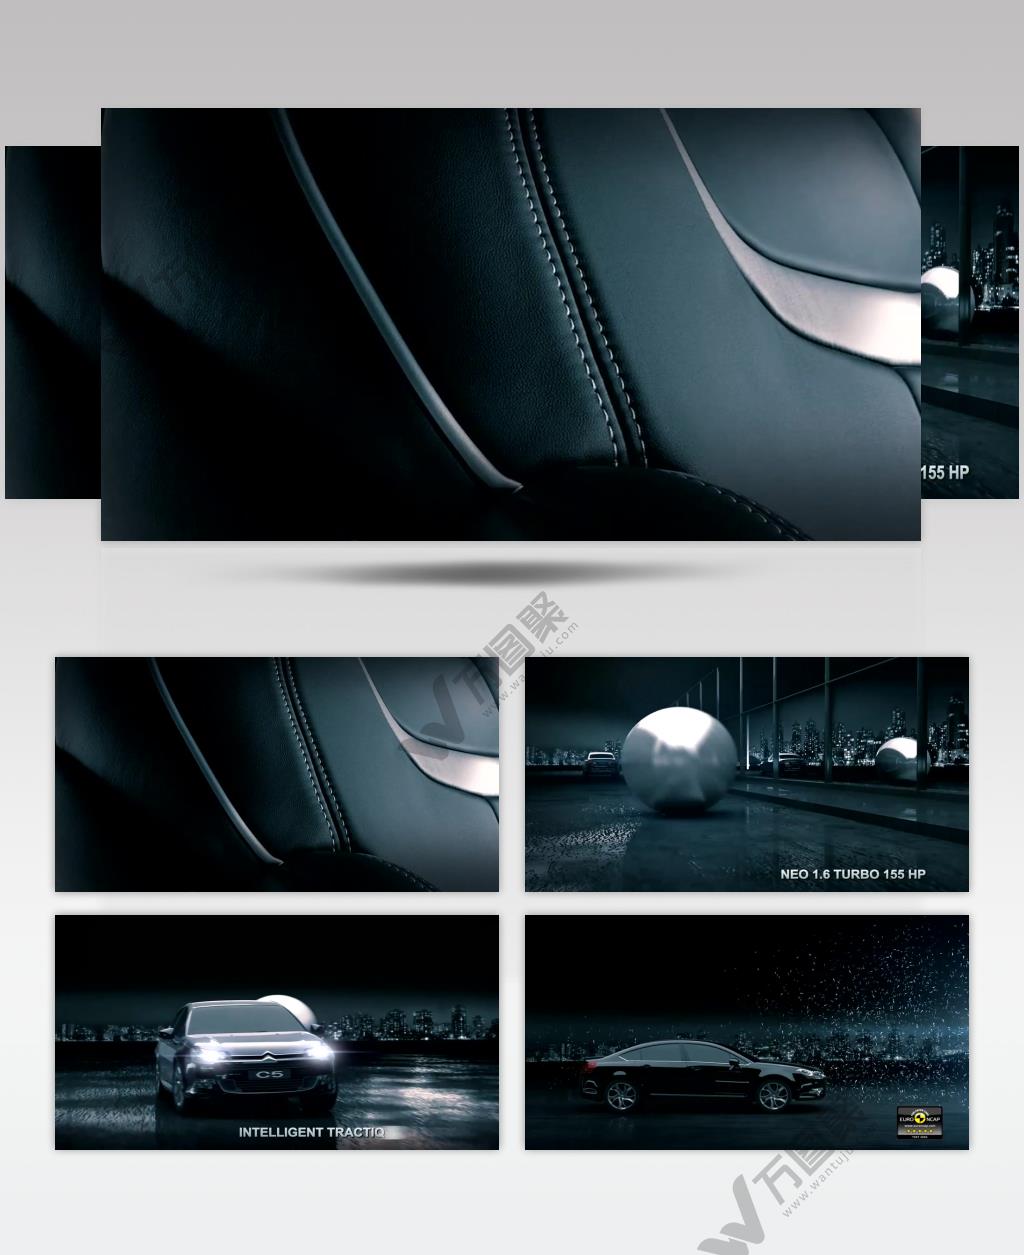 Citroen 雪铁龙C5广告 .720p 欧美高清广告视频